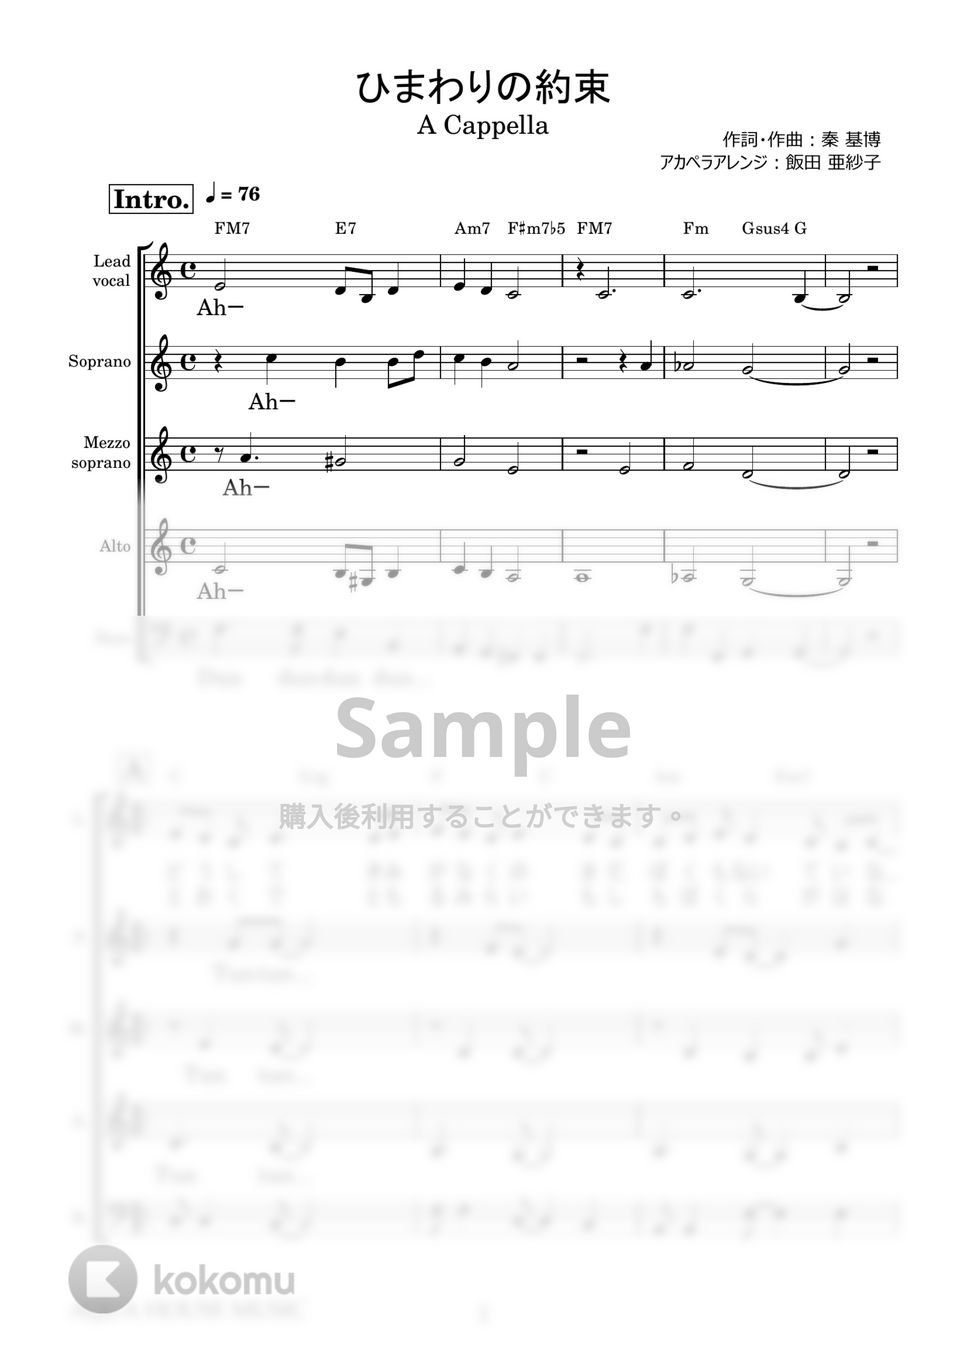 秦 基博 - ひまわりの約束 (アカペラ楽譜♪5声ボイパなし) by 飯田 亜紗子